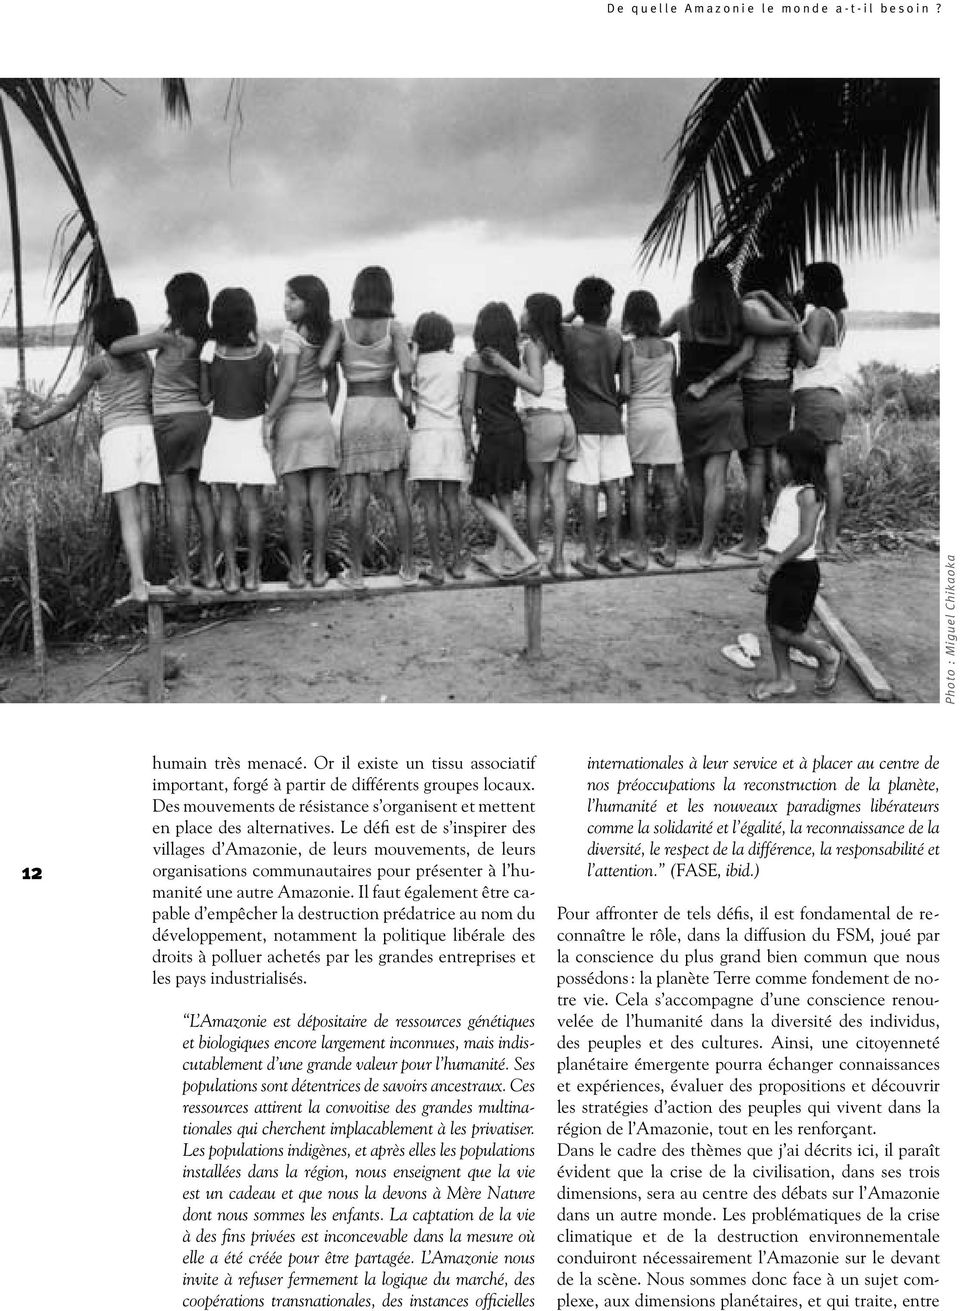 Le défi est de s inspirer des villages d Amazonie, de leurs mouvements, de leurs organisations communautaires pour présenter à l humanité une autre Amazonie.